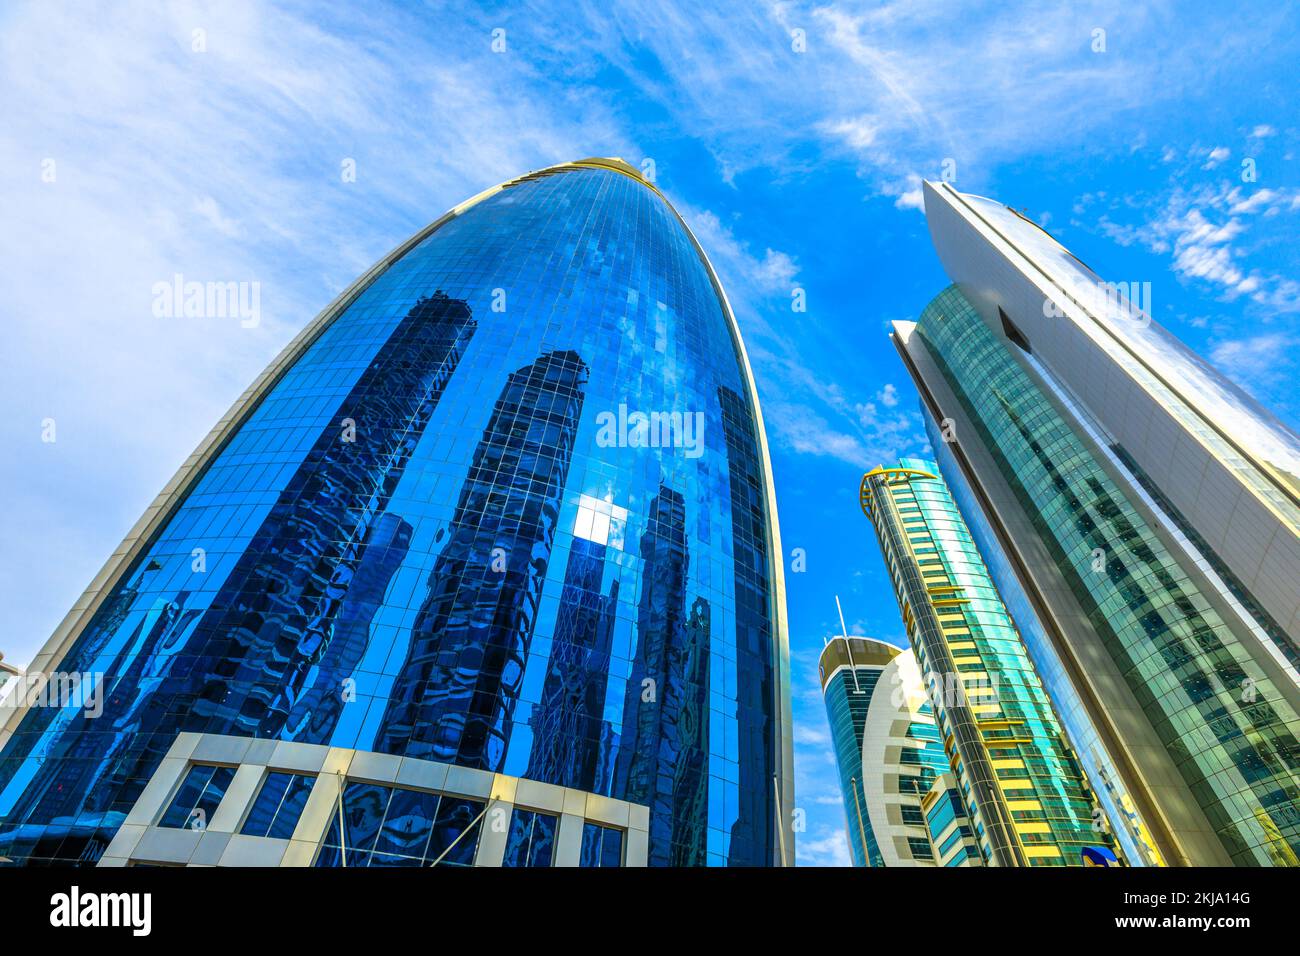 Doha, Qatar - 17 febbraio 2019: Woqod Tower con la sua forma futuristica e la facciata riflettente smaltata nella zona di West Bay. Grattacieli moderni a Doha Foto Stock